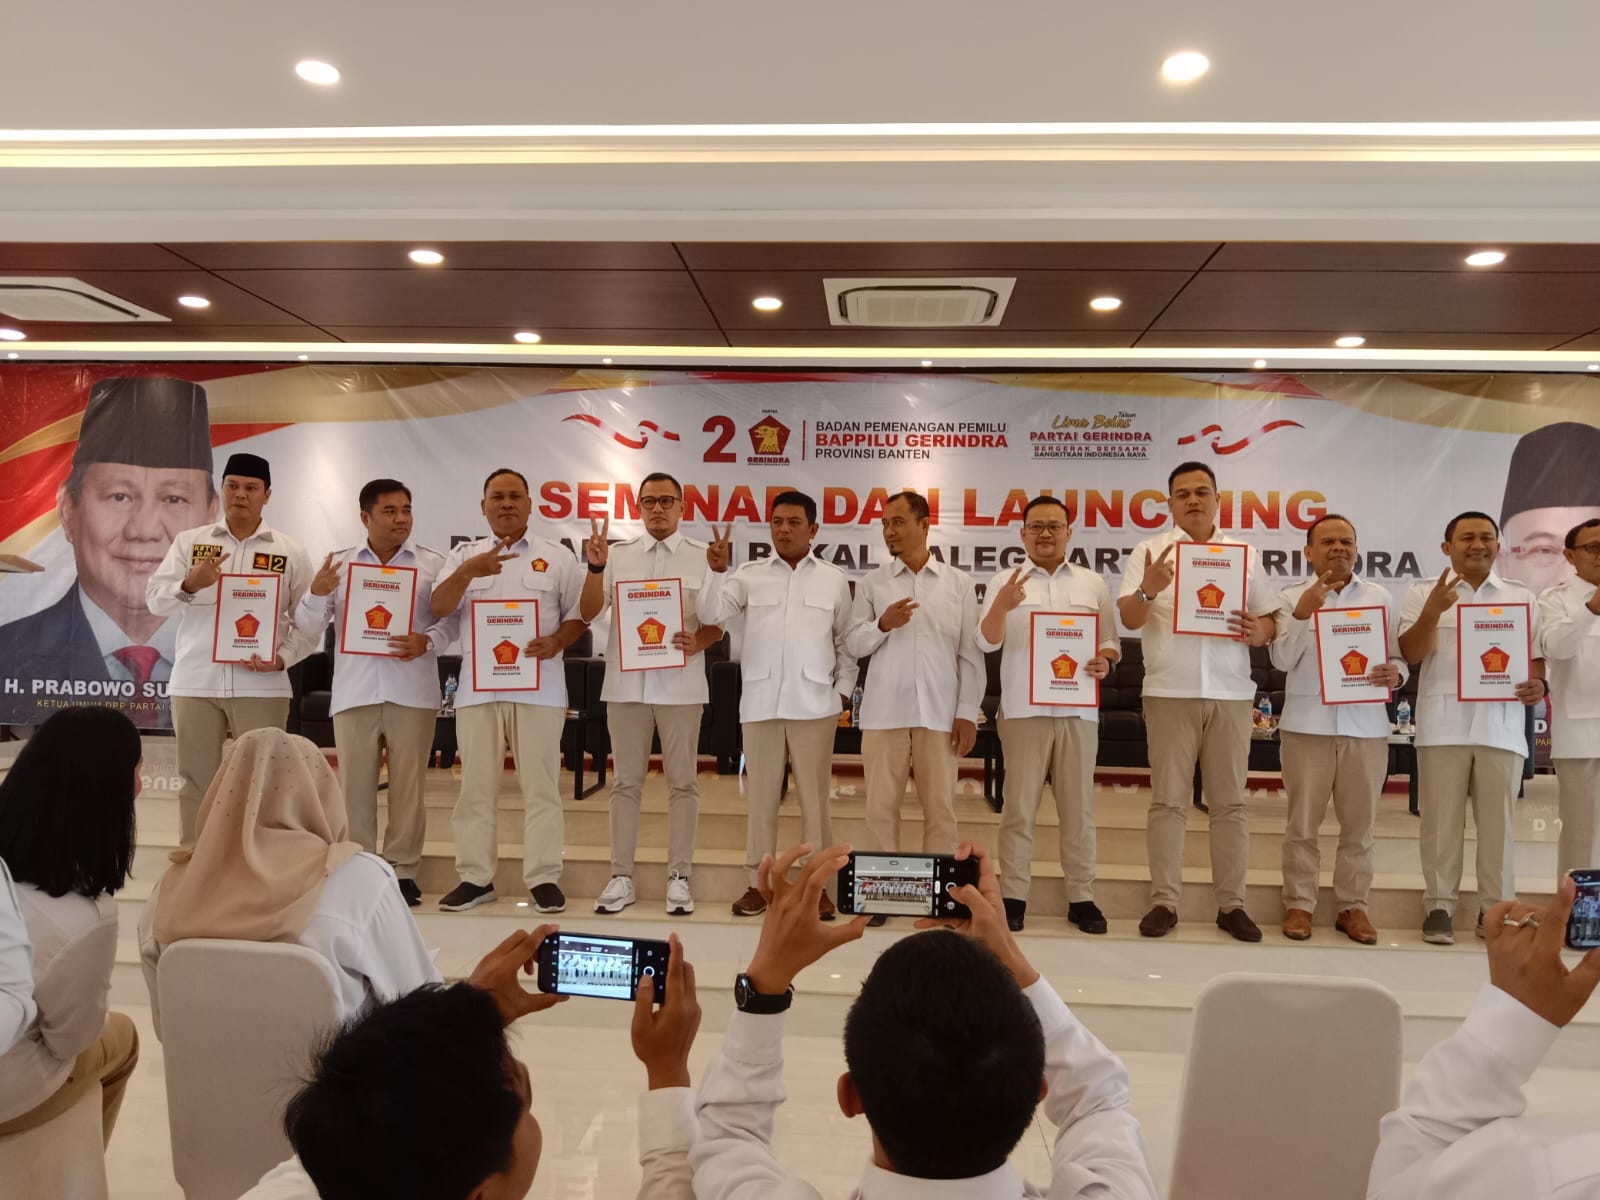 Dewan PImpinan Cabang (DPC) partai Gerindra Kota Tangsel resmi membuka pendaftaran bakal calon legislatif (bacaleg) untuk Pemilu 2024 nanti.